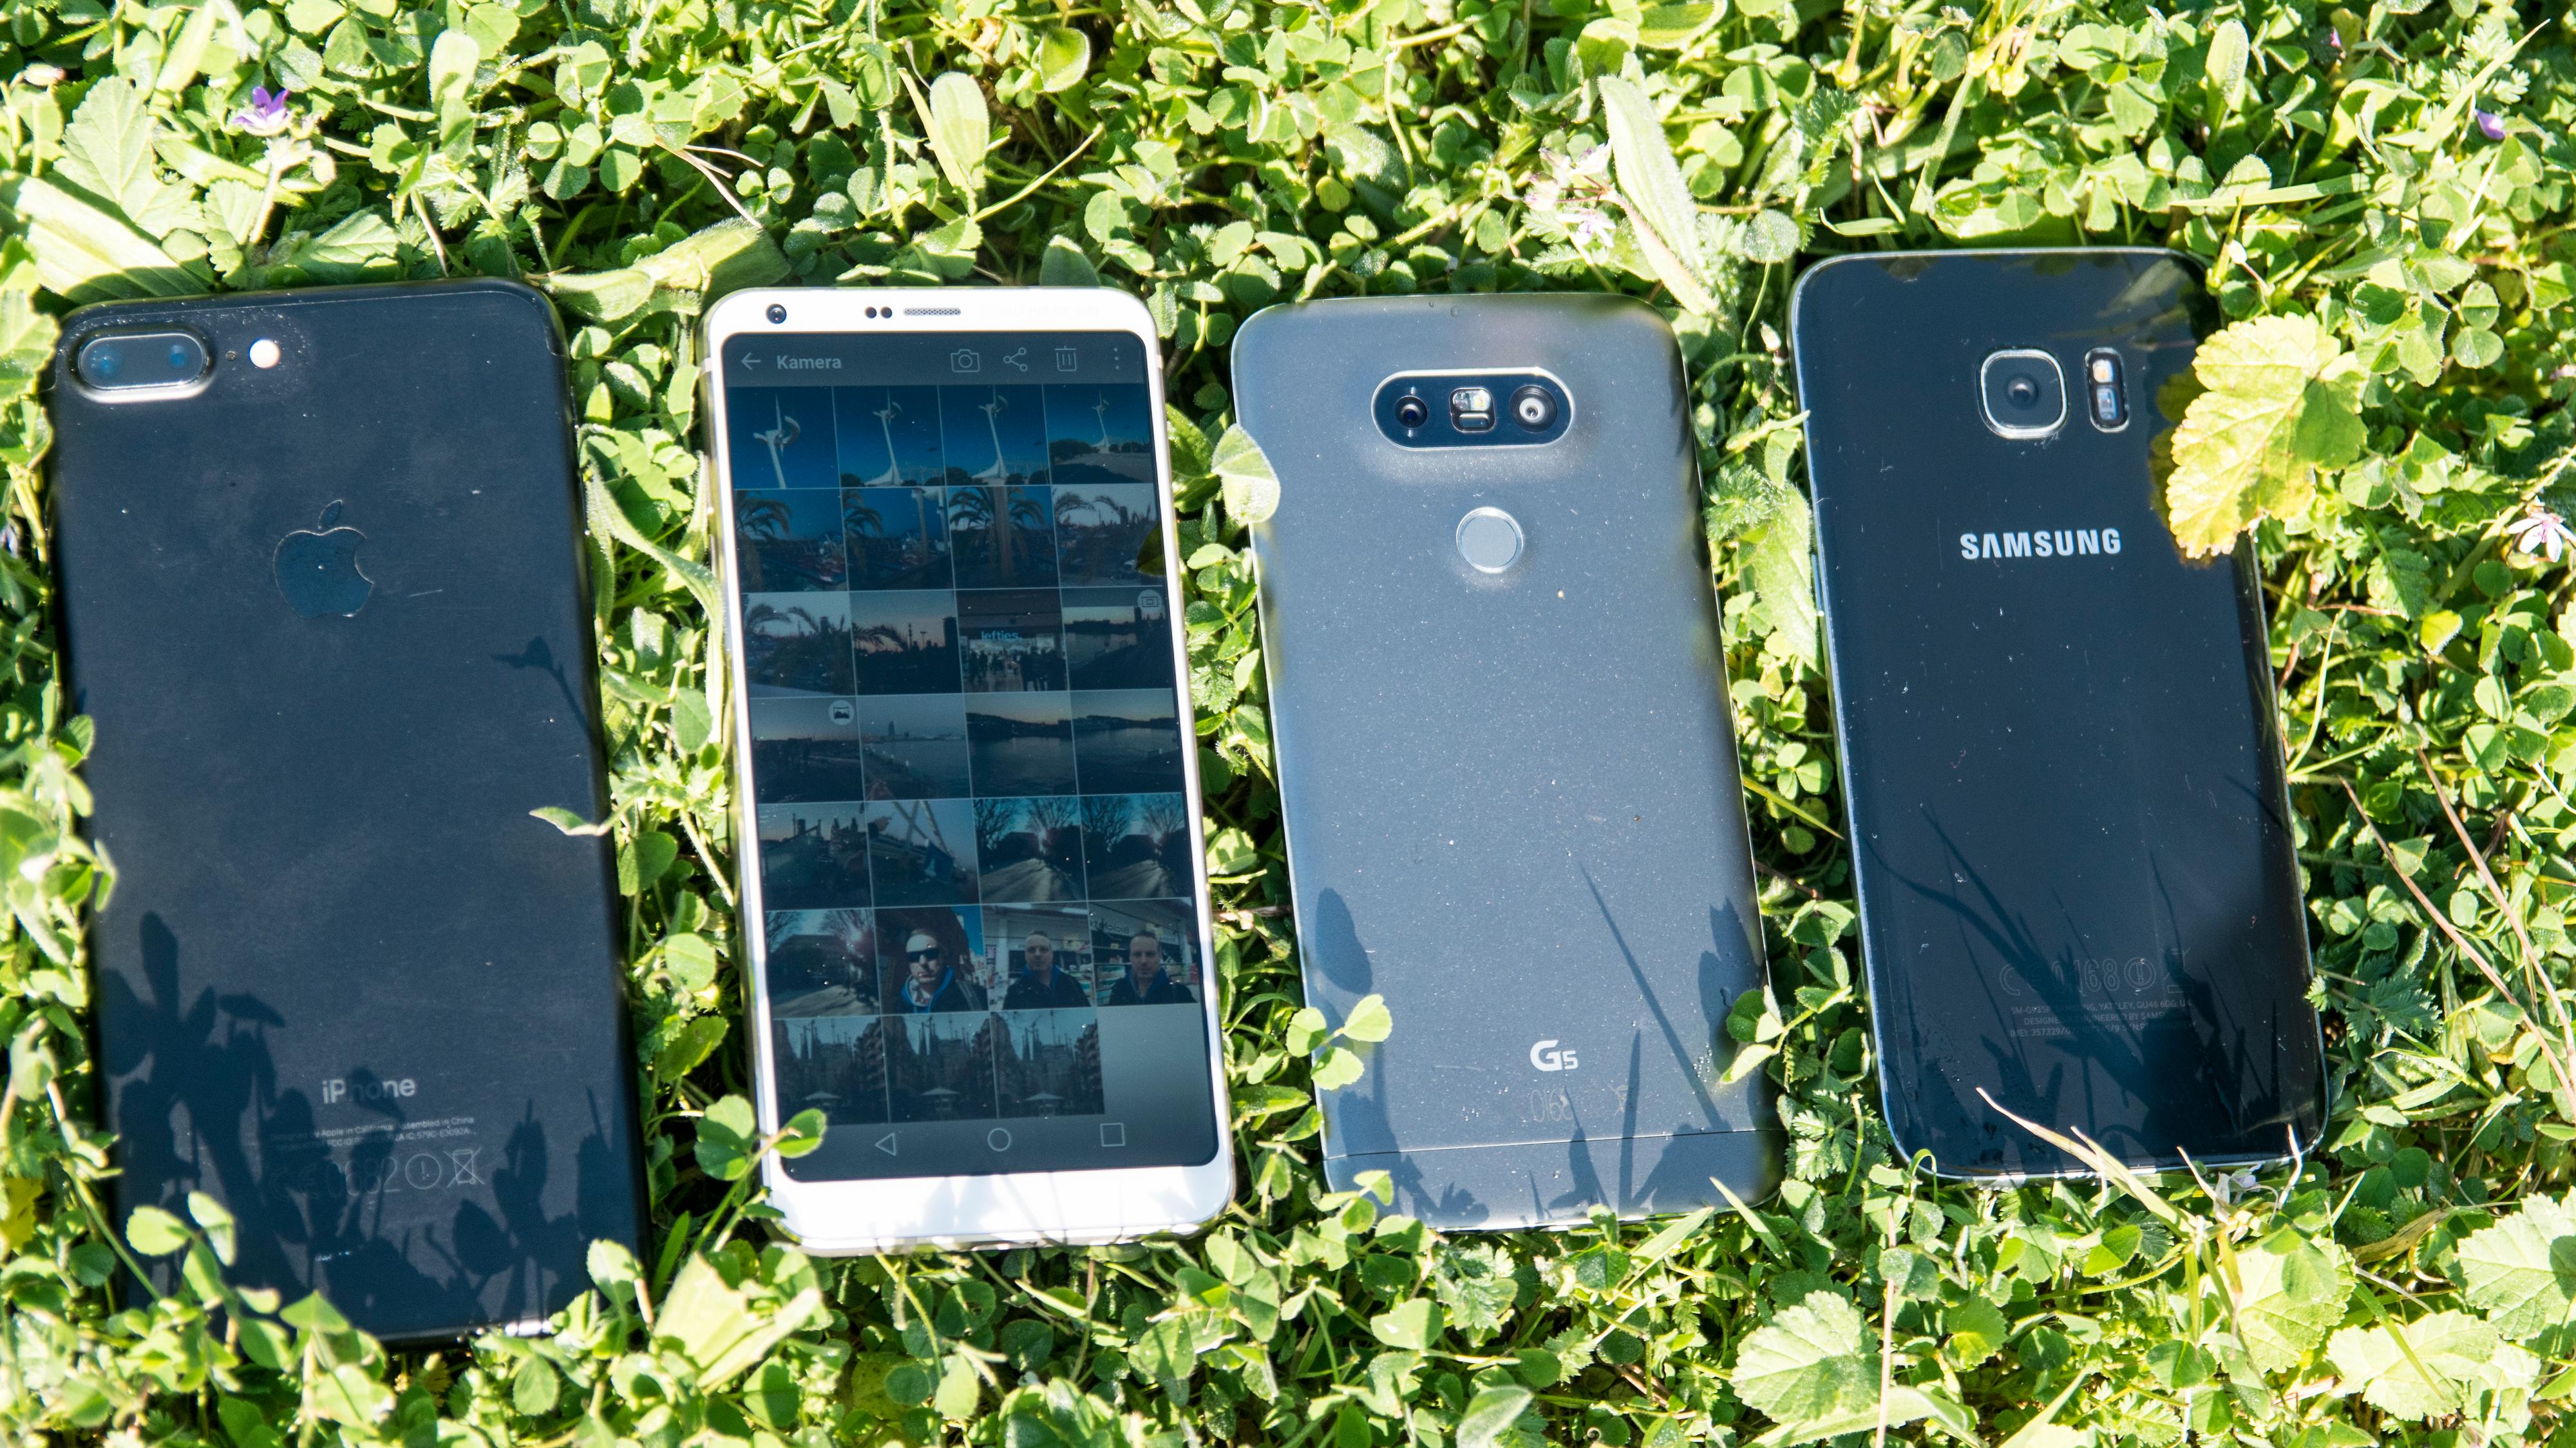 iPhone 7 Plus, LG G6, LG G5 og Samsung Galaxy S7 Edge. Felles for dem alle er at de er enten omtrent like store, eller større, samtidig som de har mindre skjerm enn G6.